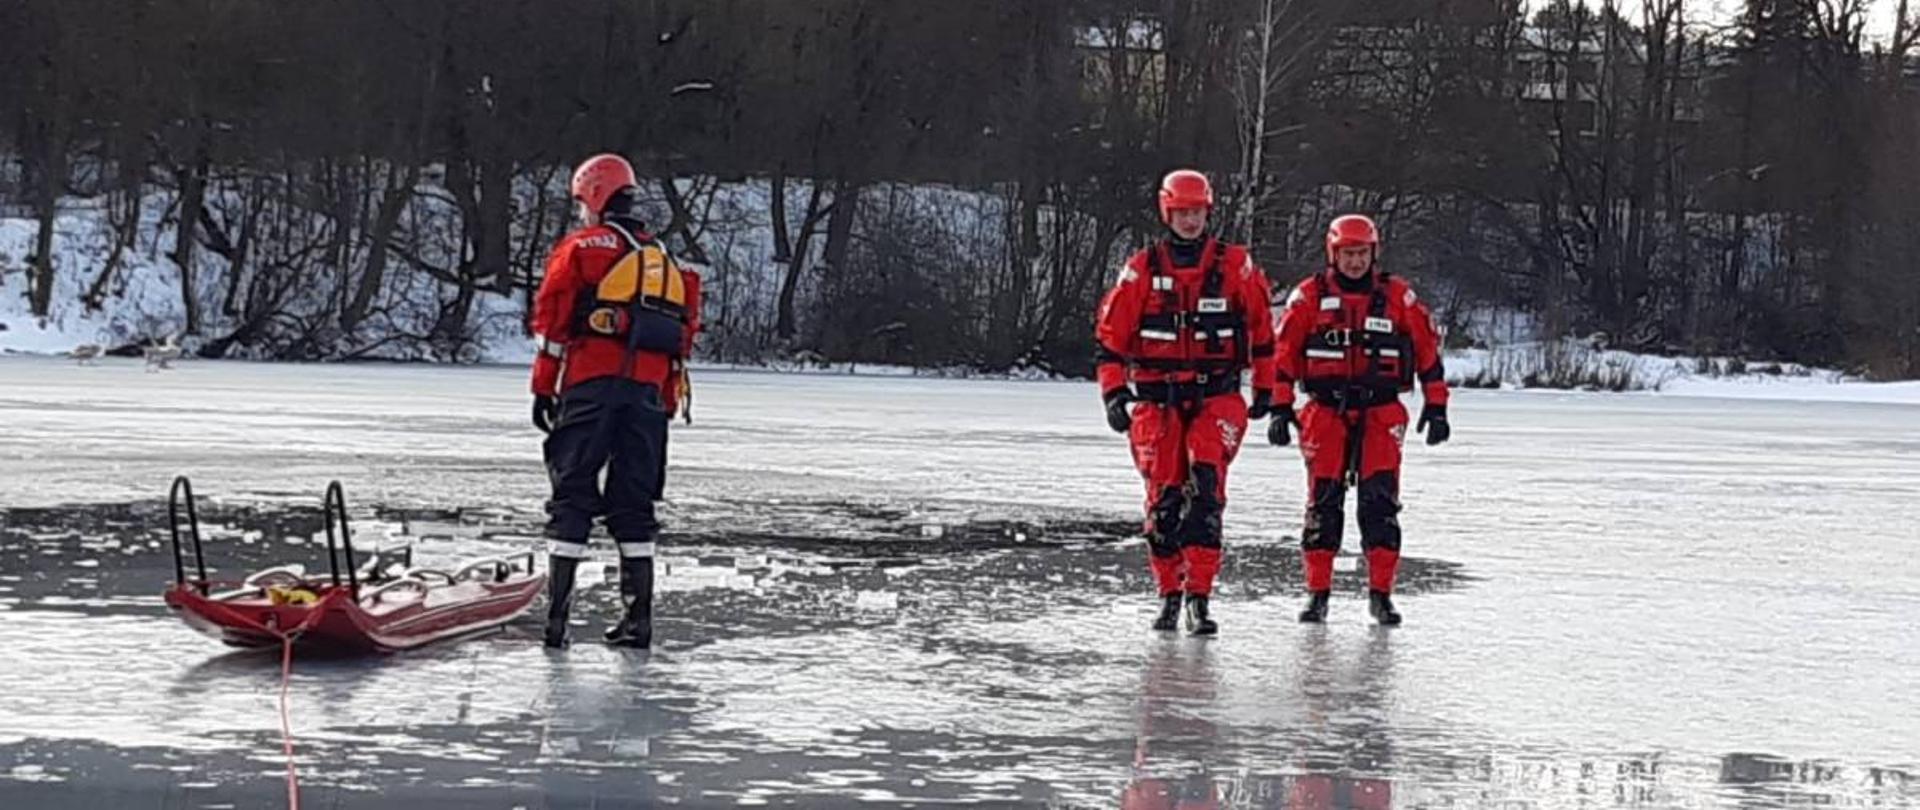 Zdjęcie przedstawia 3 strażaków ubranych w skafandry nurkowe oraz kaski. Strażacy poruszają się po zamarzniętym zbiorniku wodnym - chodzą po lodzie. Do ćwiczeń wykorzystują sanie lodowe.